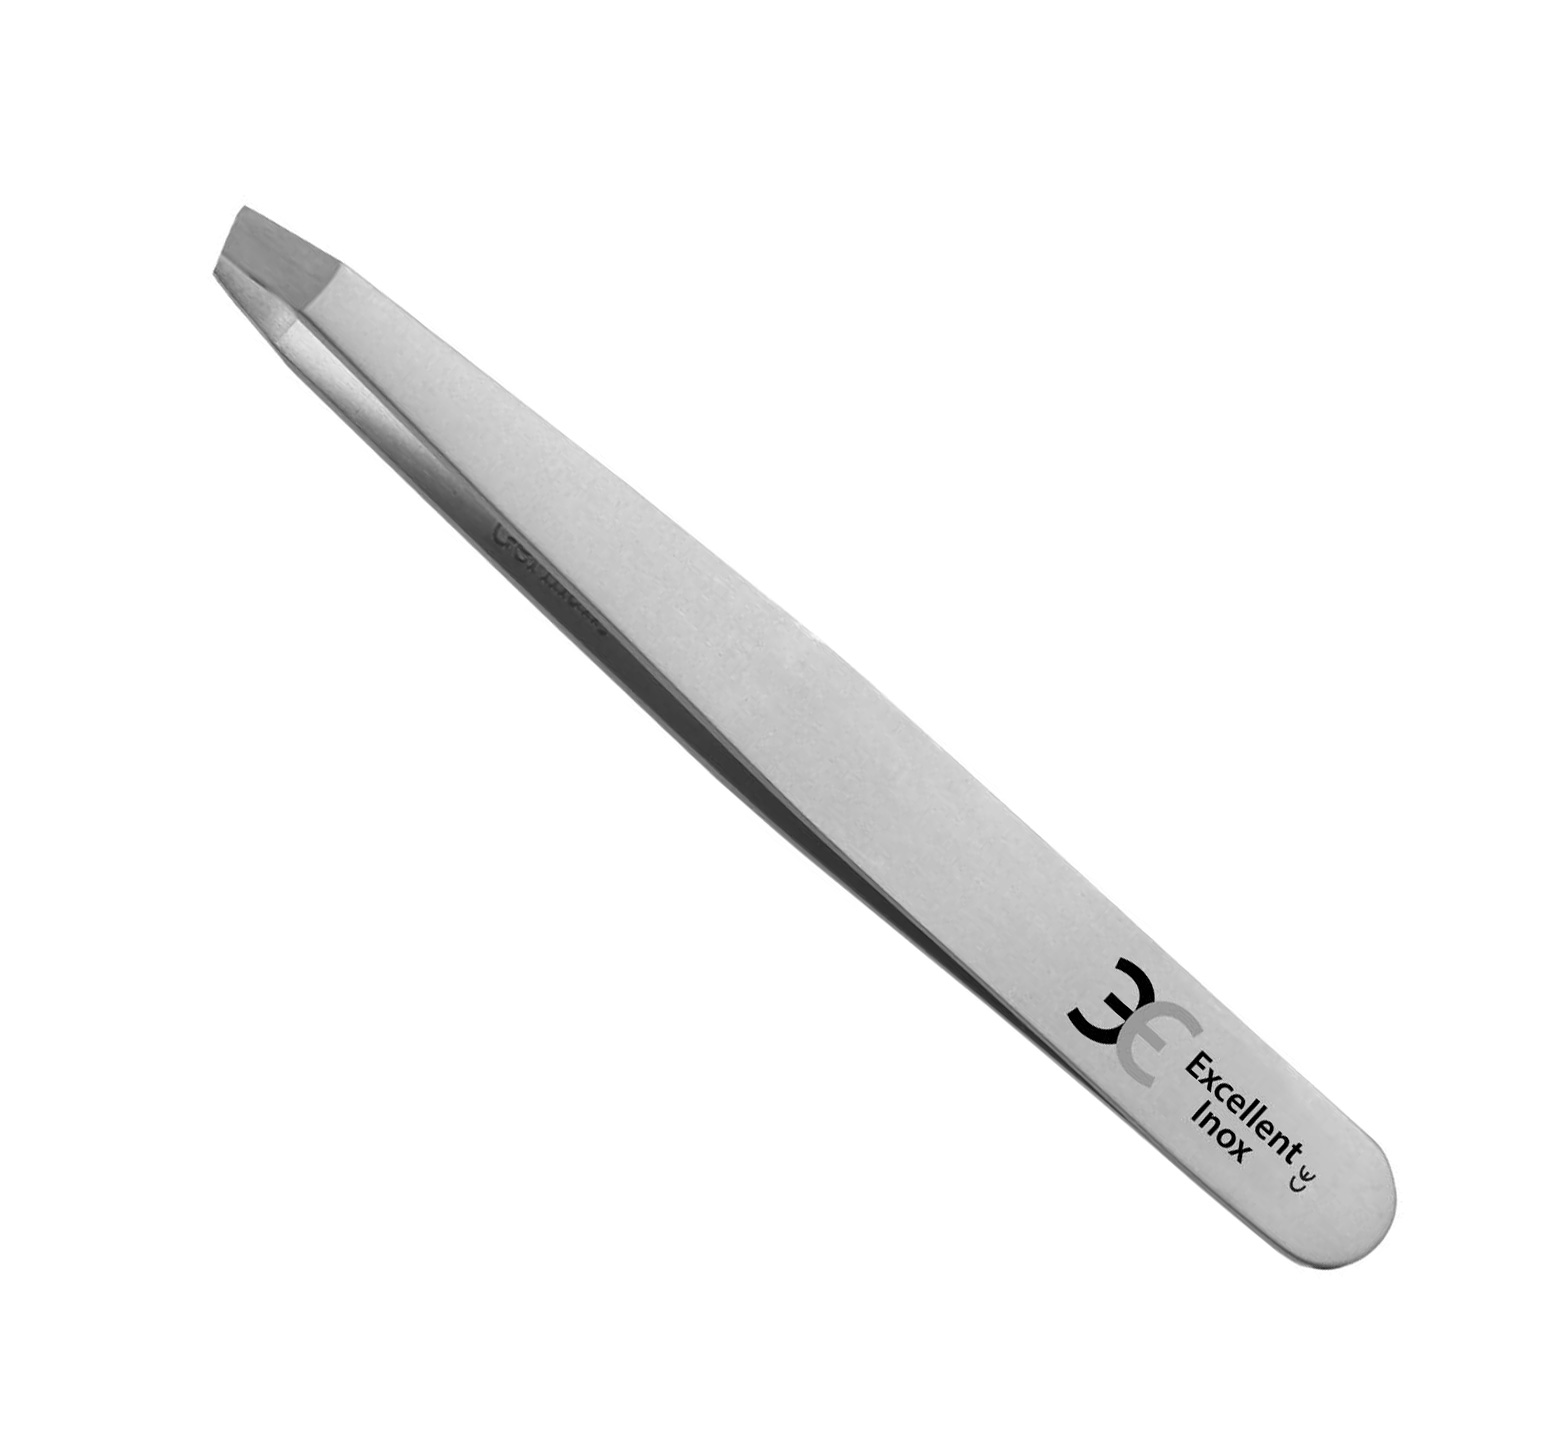 Excellent tweezers 9.5 cm, slanted, stainless steel